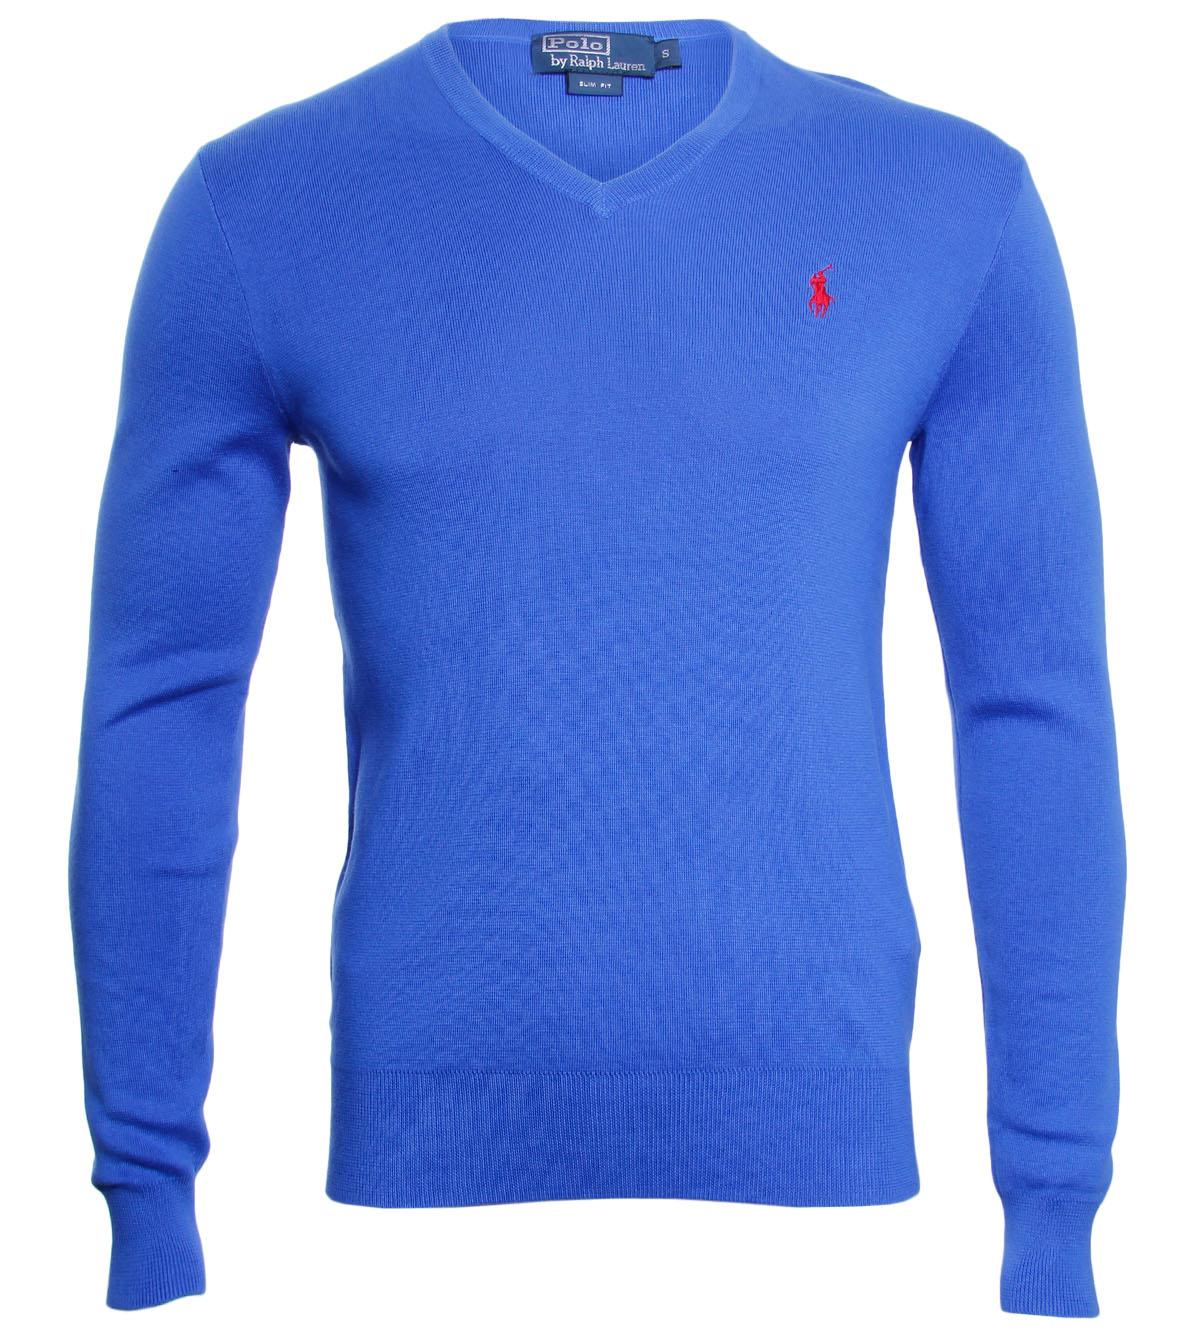 Foto Polo Ralph Lauren Bright Blue Cotton V-Neck Sweater-M foto 935078